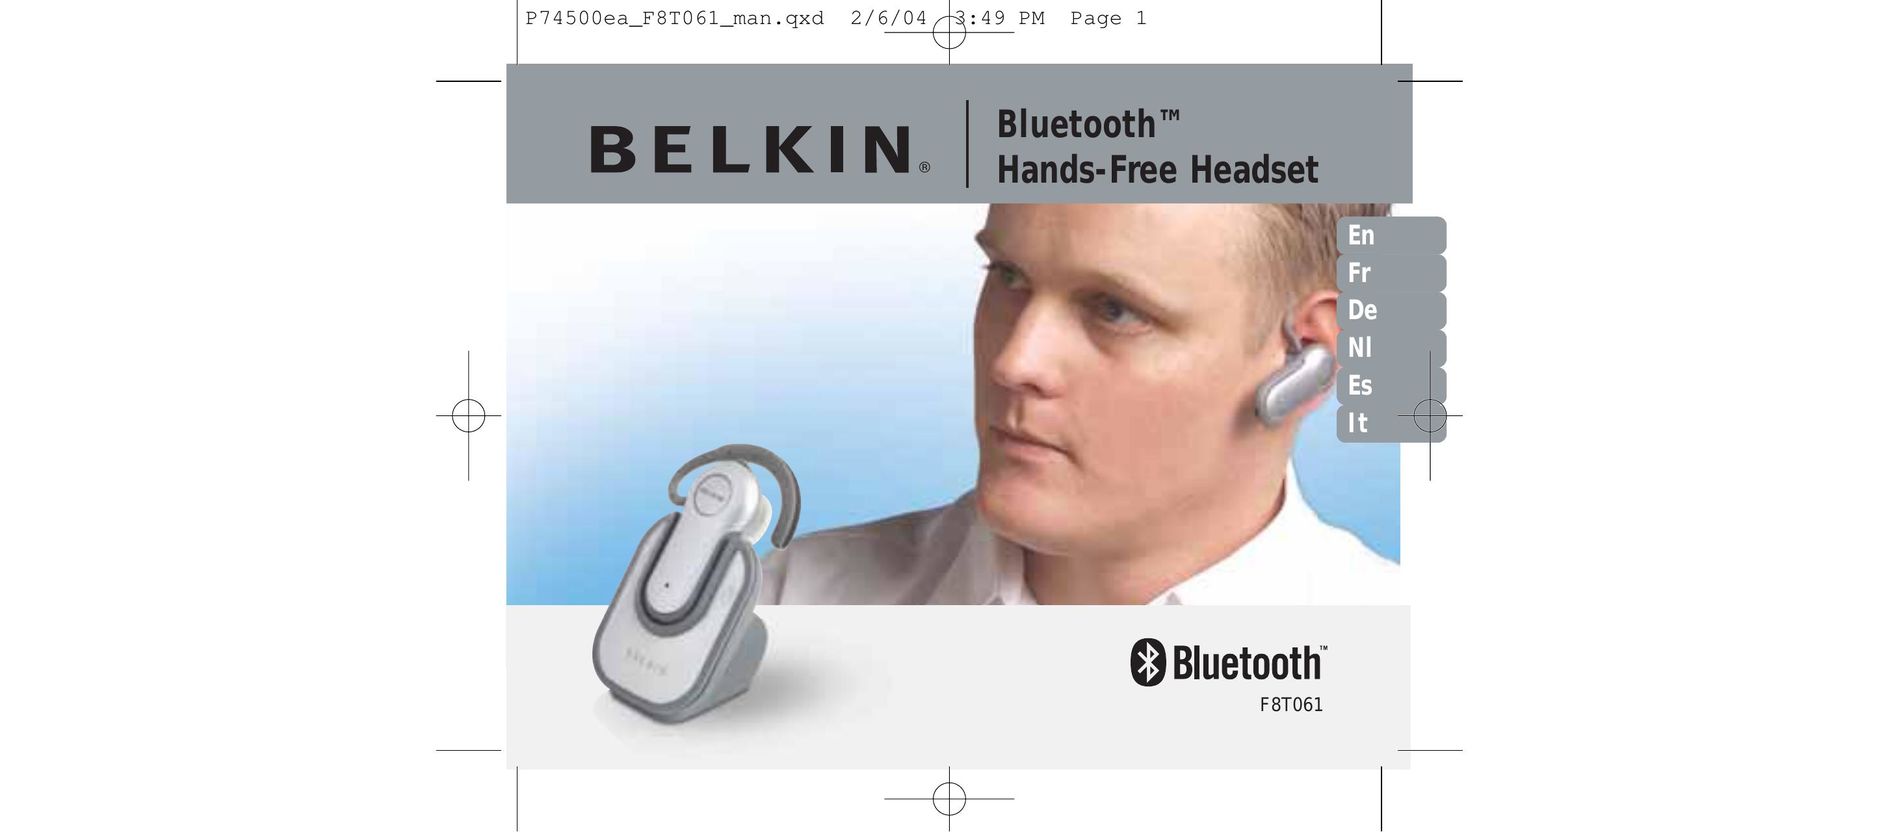 Belkin F8T061 Bluetooth Headset User Manual